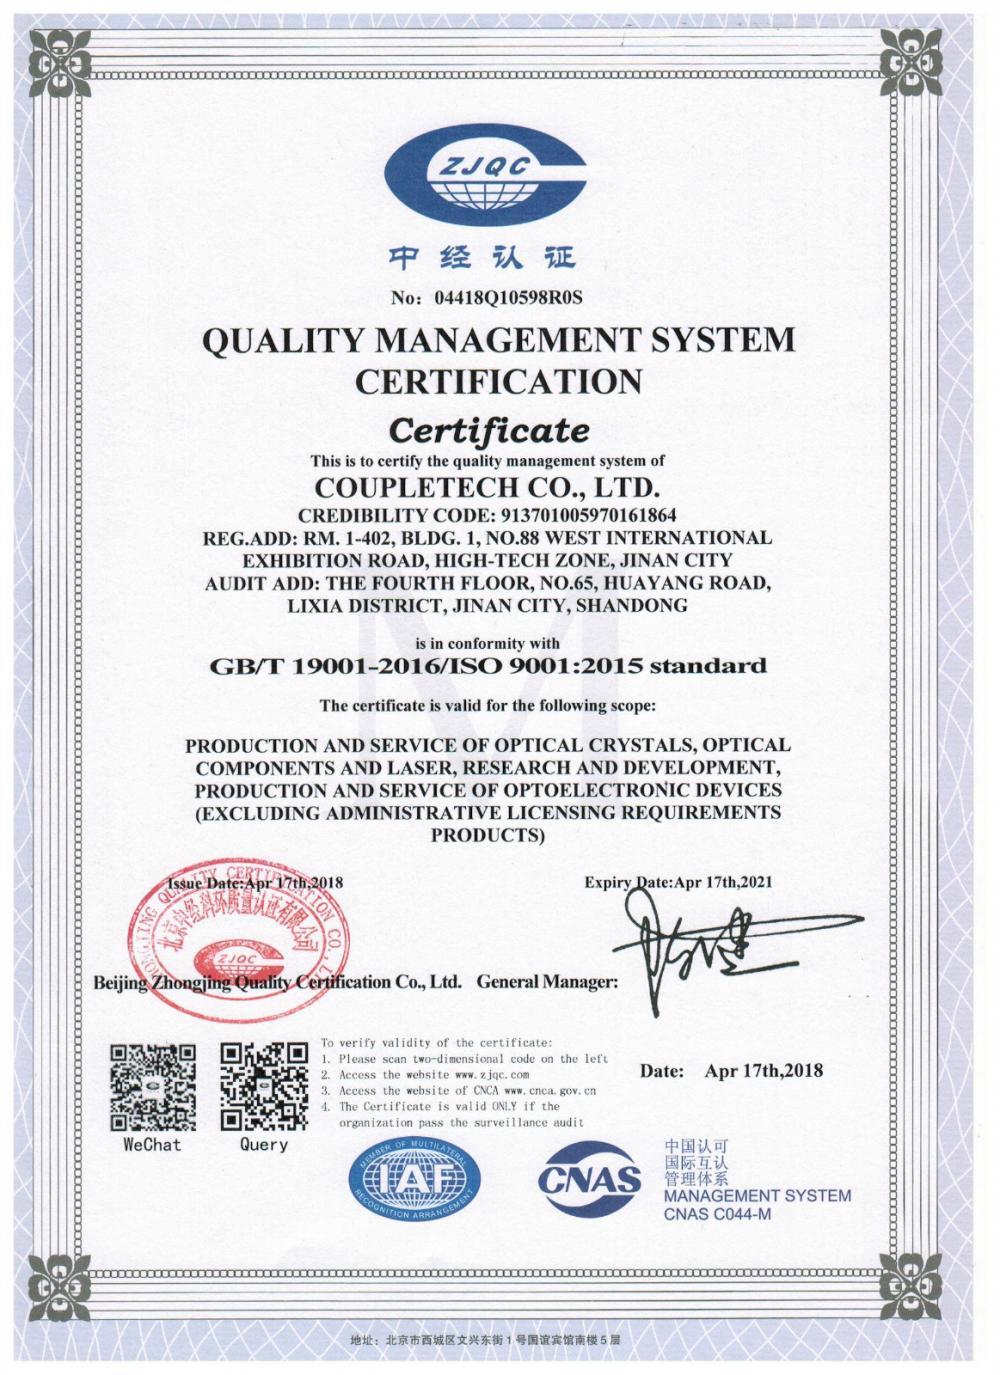 Coupletech Co., Ltd. hat die Zertifizierung bestanden: Eine modulare Halterung für aktive Temperaturkontrollquarze.